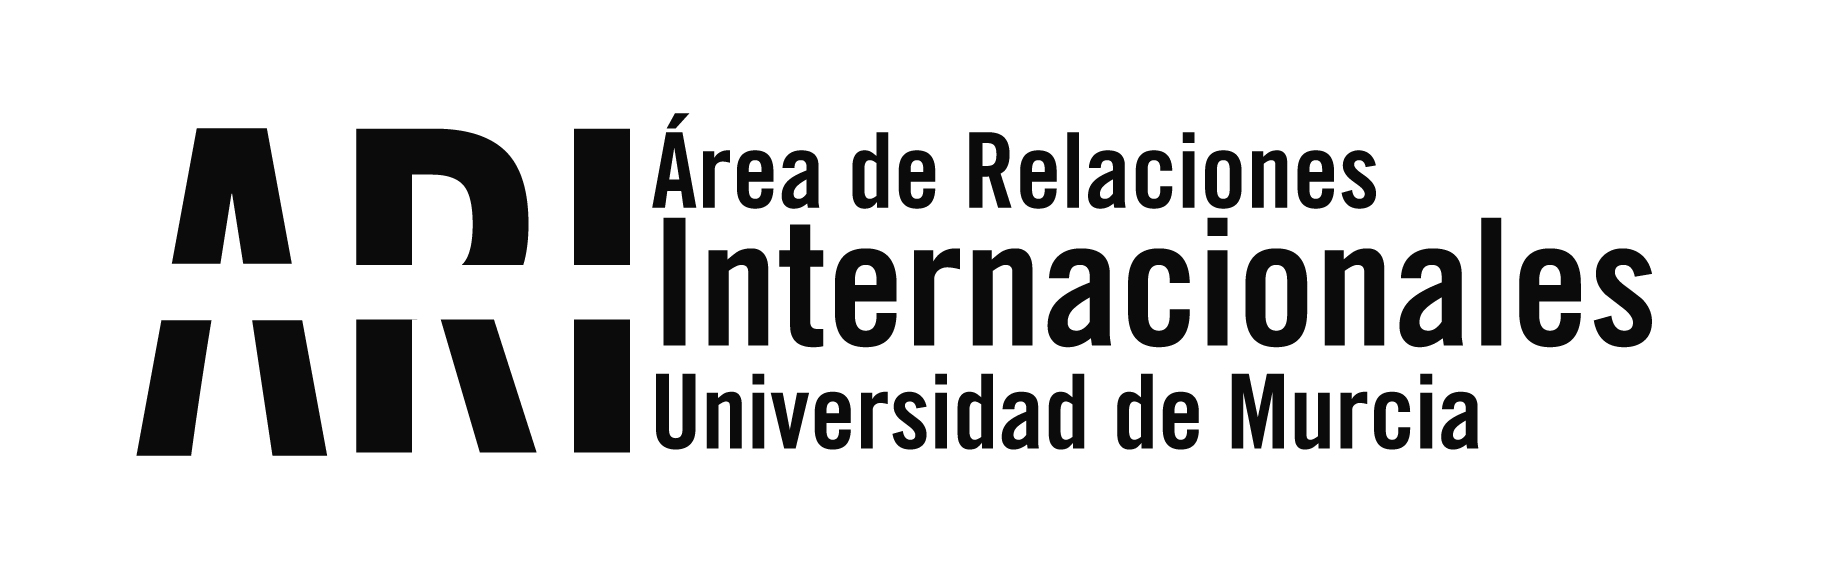 Orientation Sessions Incoming students 2019-20 - Área de Relaciones Internacionales